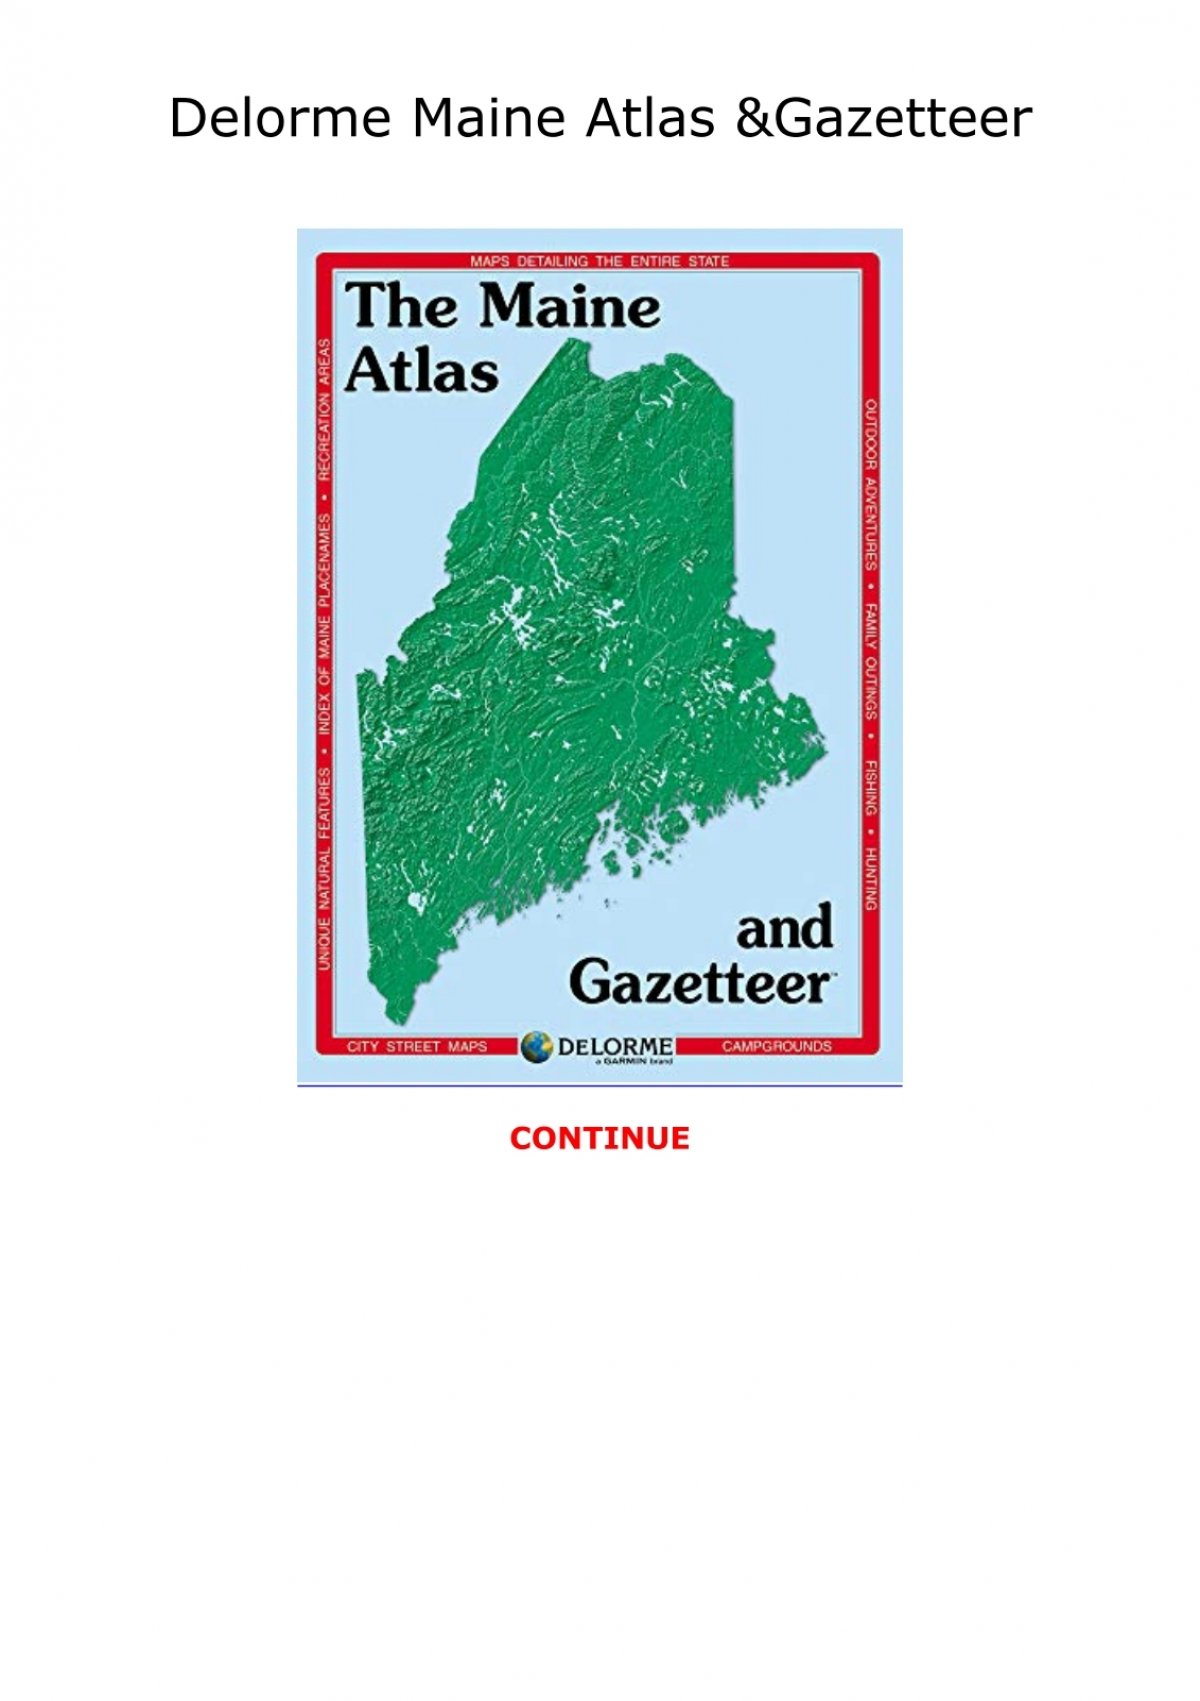 (DOWNLOAD) Delorme Maine Atlas & Gazetteer